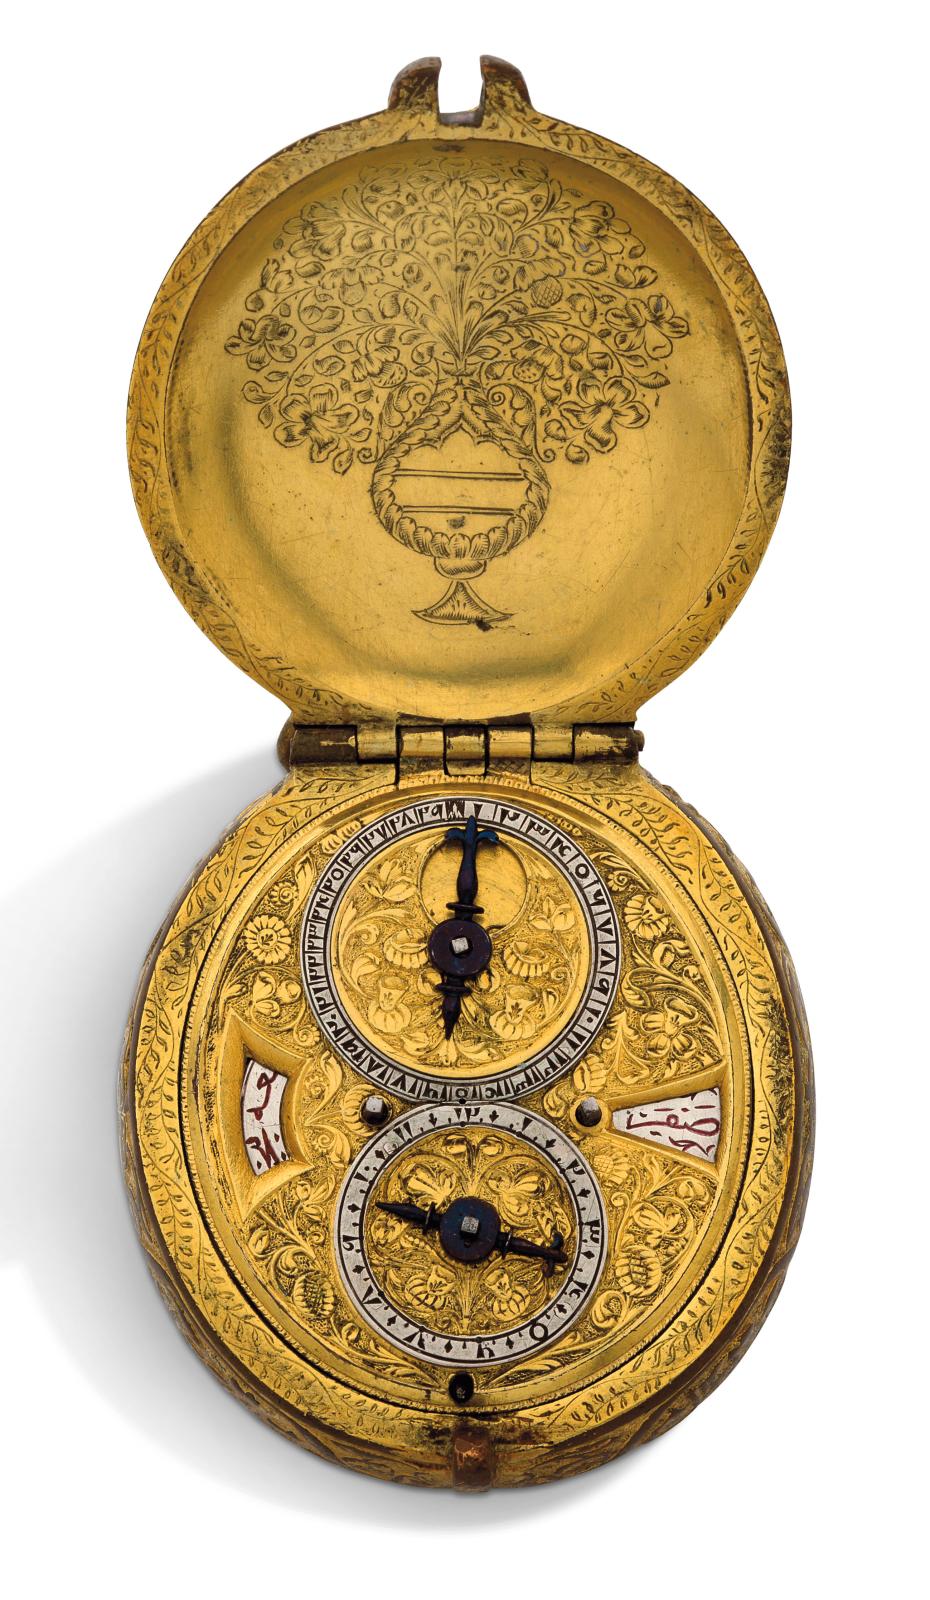 Travail suisse, milieu du XVIIe siècle, montre ovale astronomique en métal doré fabriquée pour le marché ottoman, décor de feuillages et d